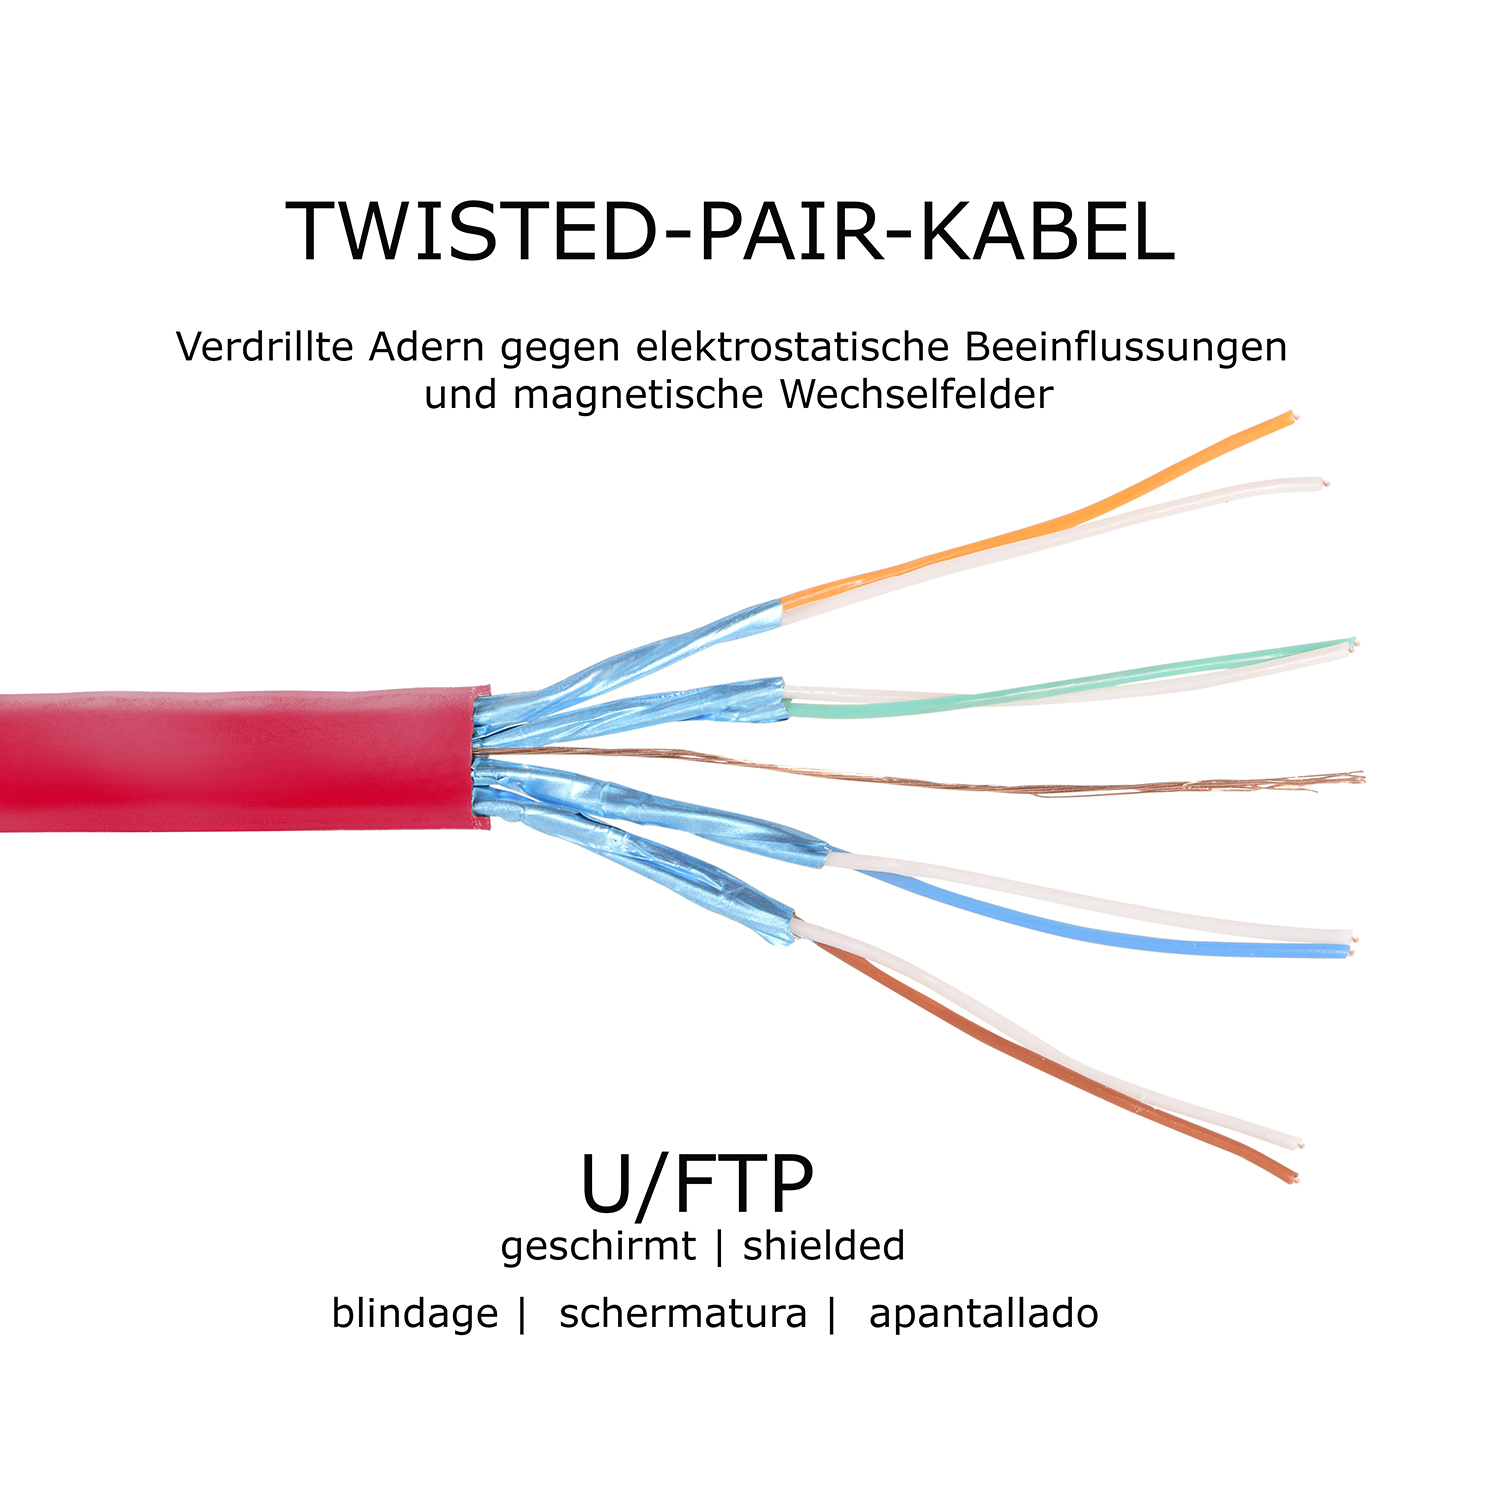 TPFNET 50m Patchkabel / 10 GBit, Netzwerkkabel, U/FTP rot, 50 Flachkabel m